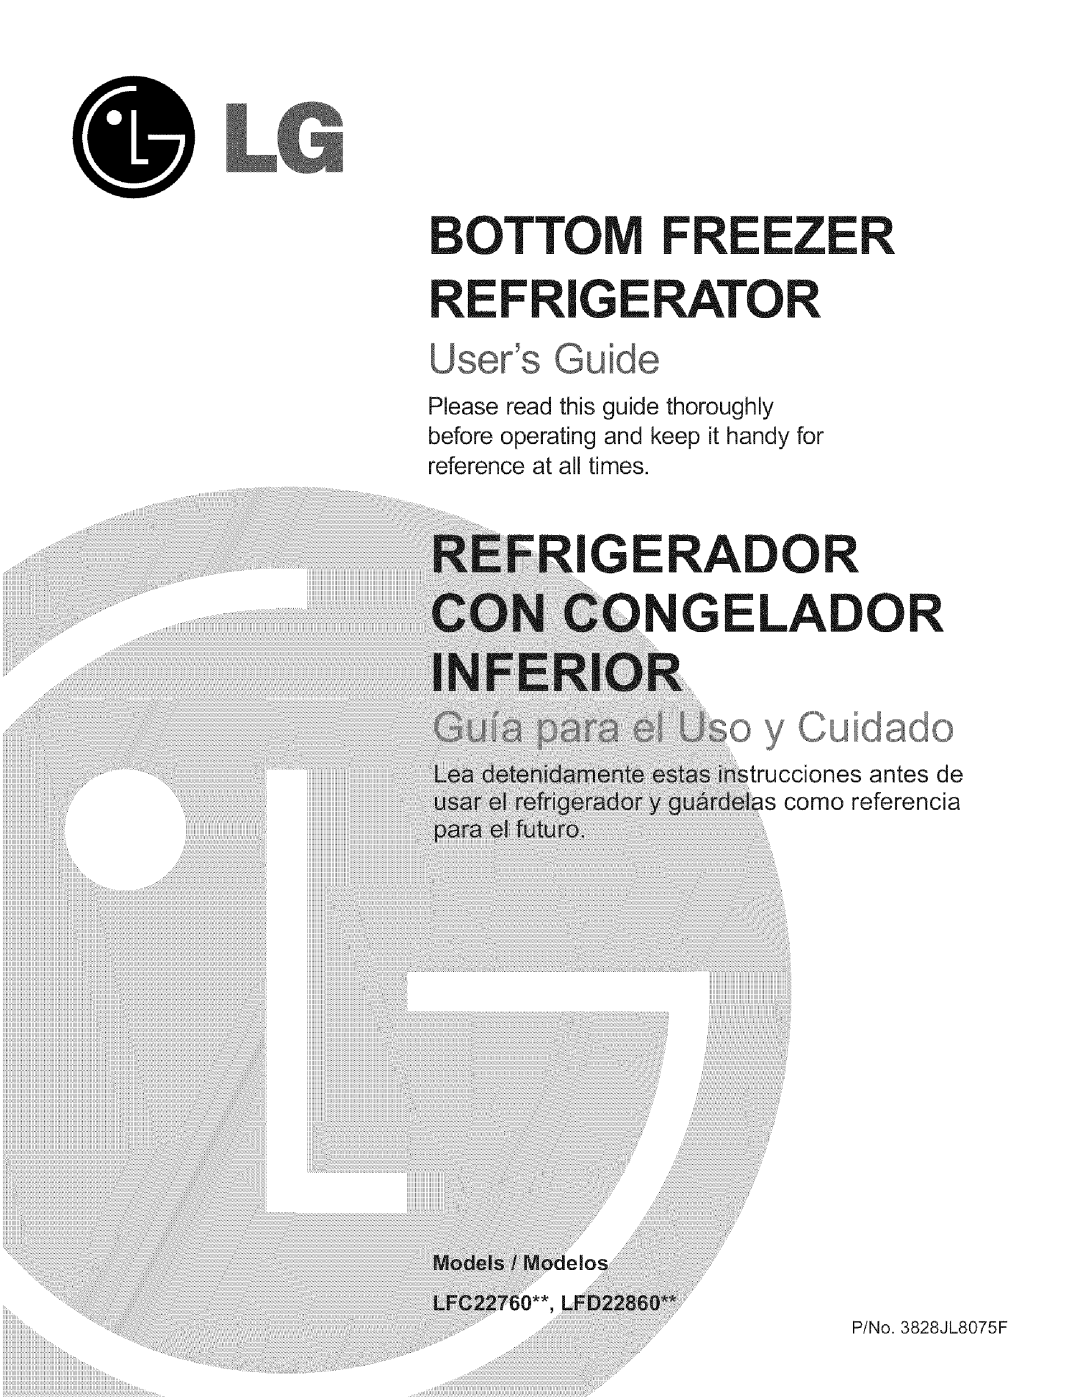 LG Electronics LFC22760 manual trucciones antes de _scomo referencia, Irador Elador, Cuidado, Guide 